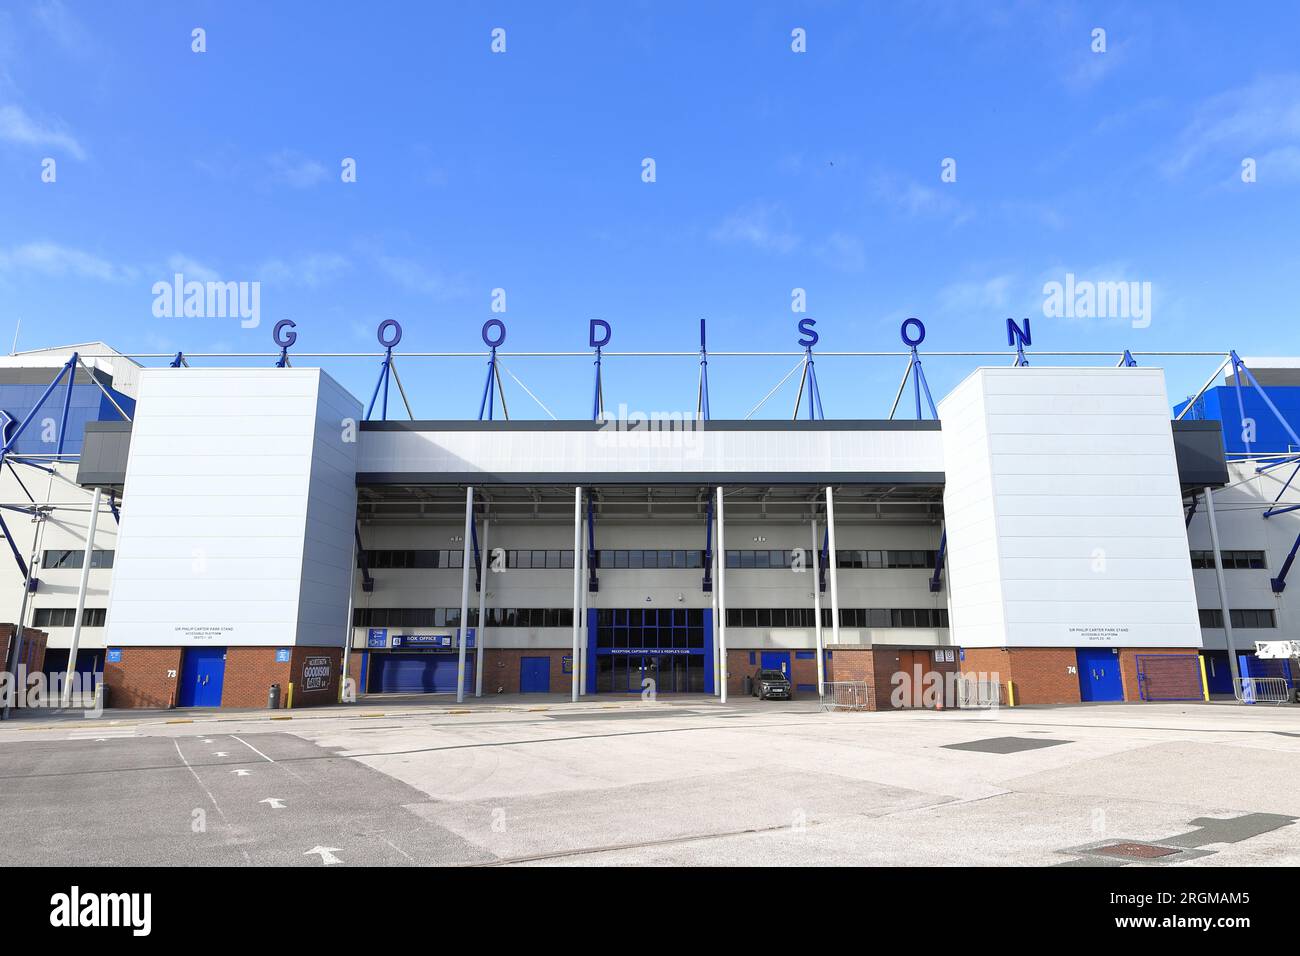 Vue sur le Park Stand, Goodison Park, Angleterre. Goodison Park est le siège d'Everton FC, membre fondateur de la Ligue anglaise de football. Banque D'Images